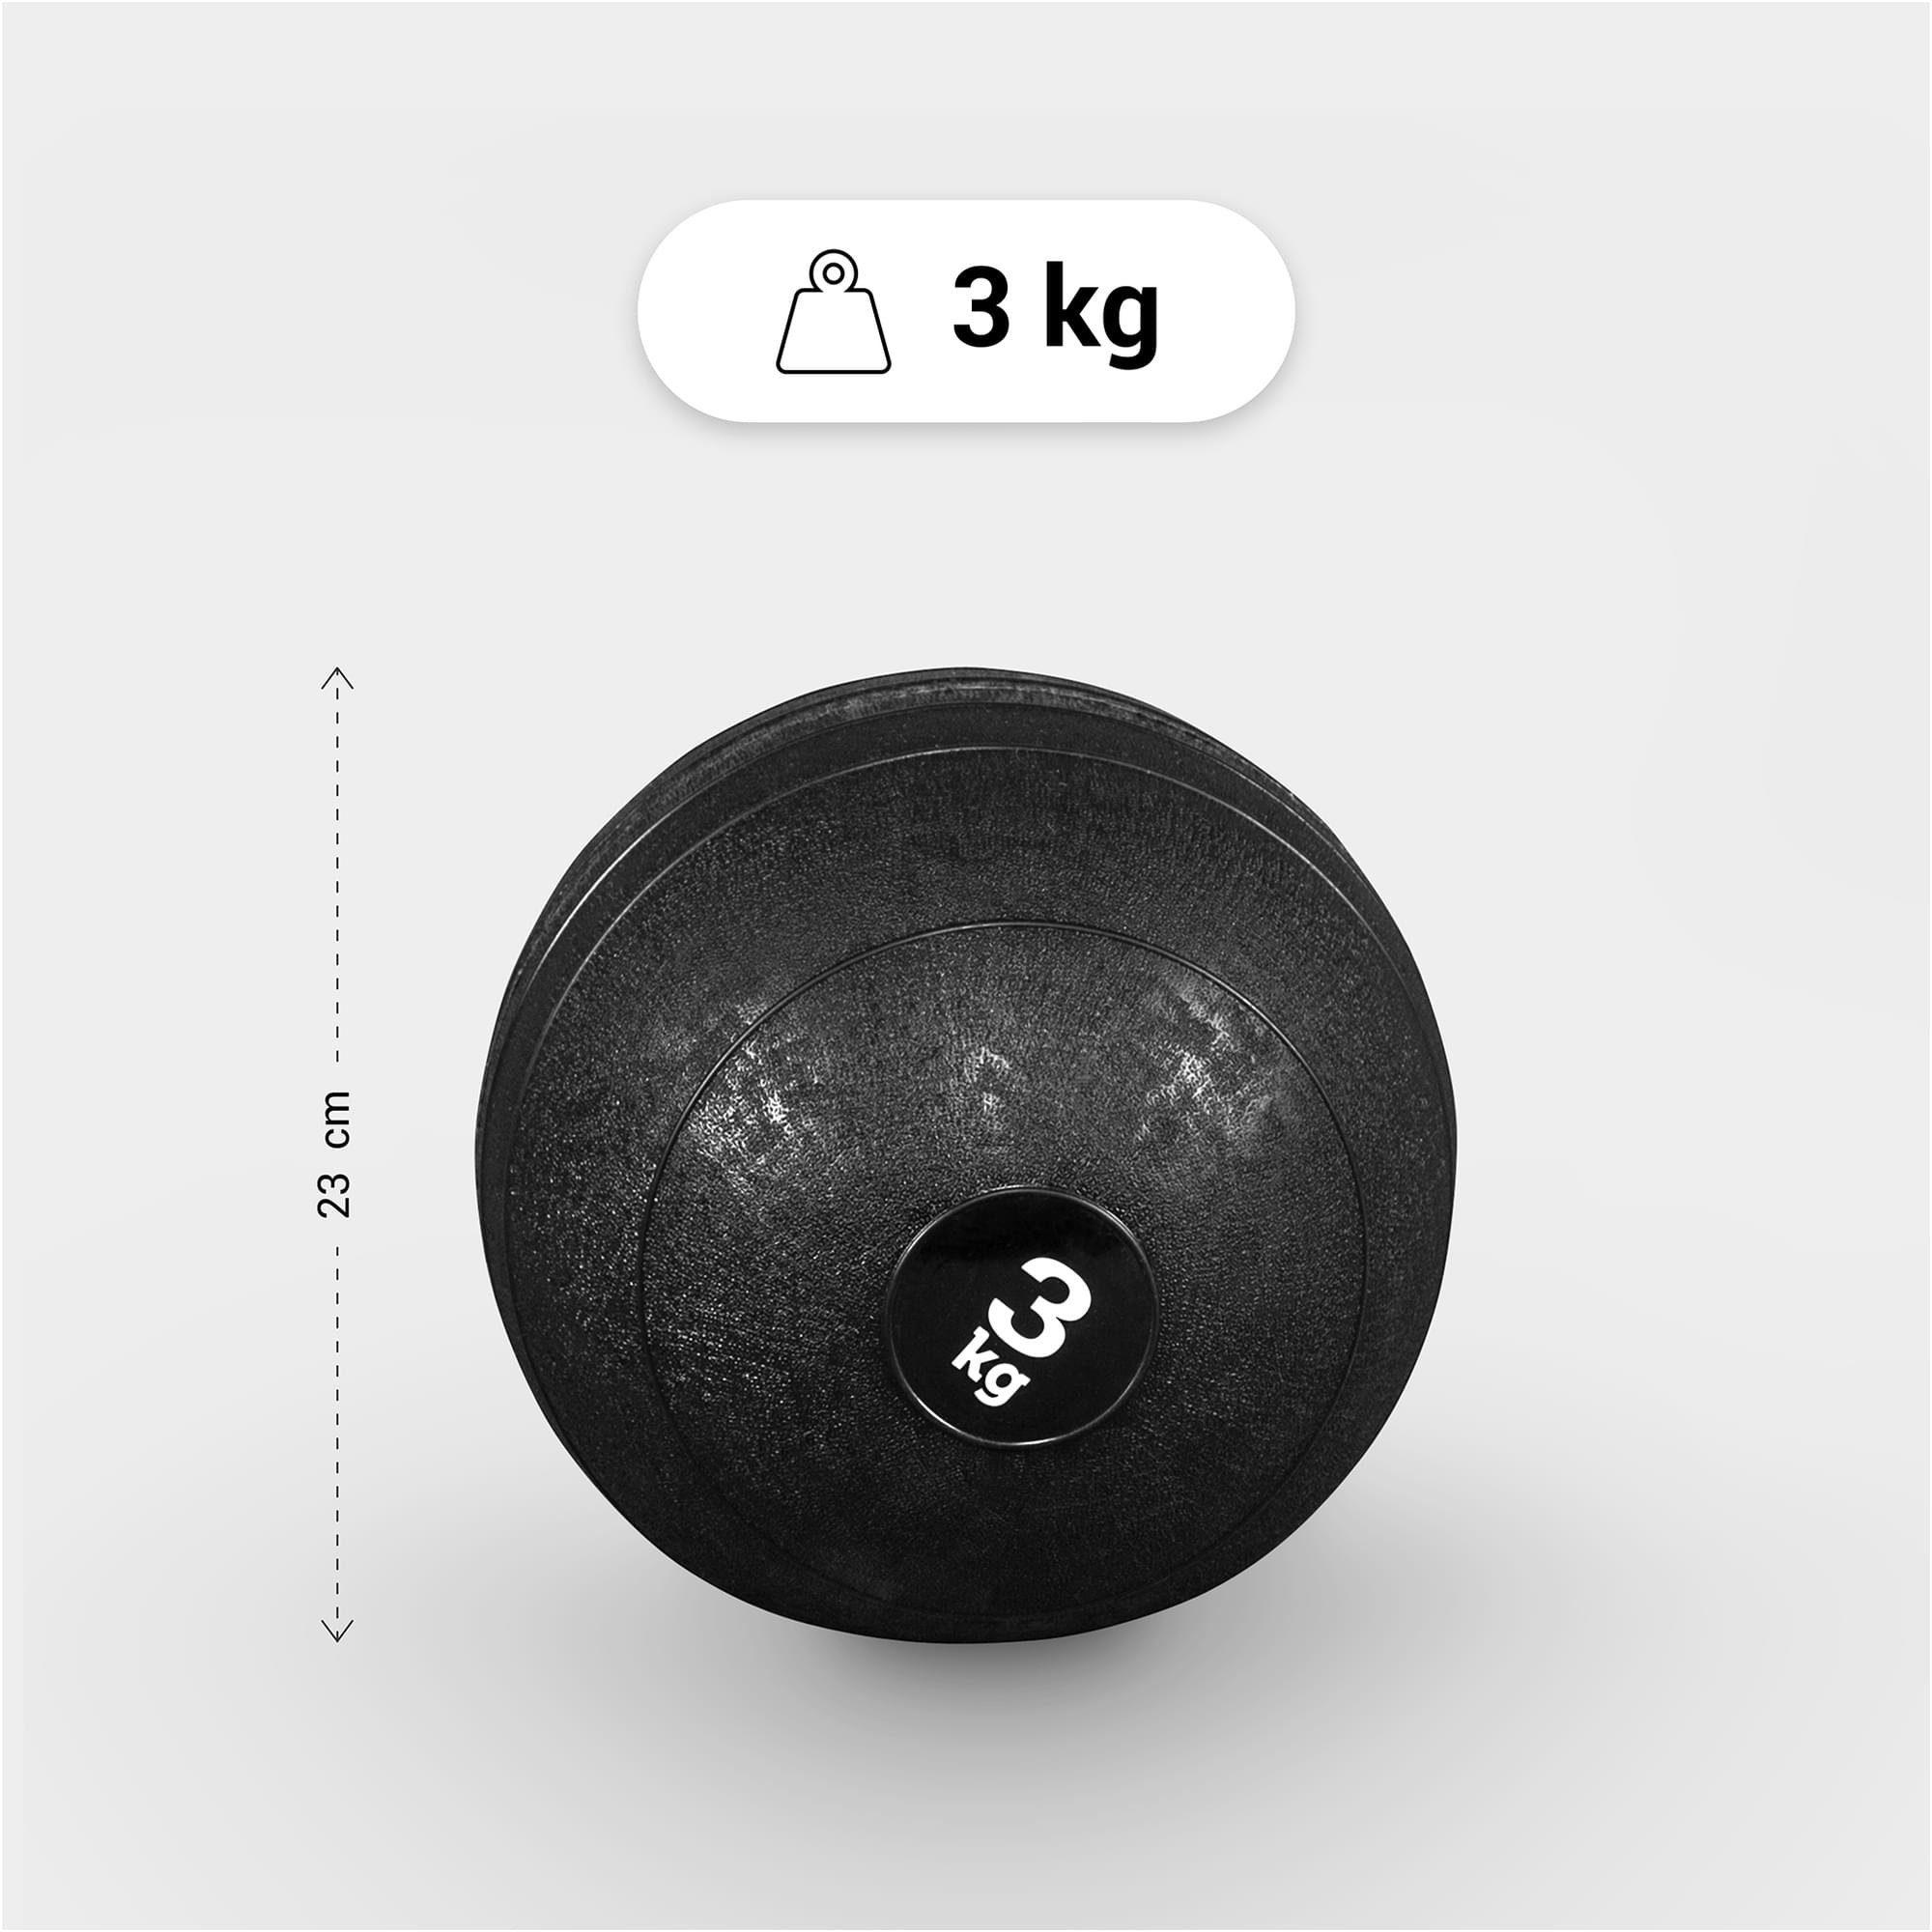 Oberfläche 3kg, GORILLA Griffiger SPORTS 20kg, 15kg, Einzeln/Set, 7kg, 15kg Set Medizinball 10kg, 5kg, mit